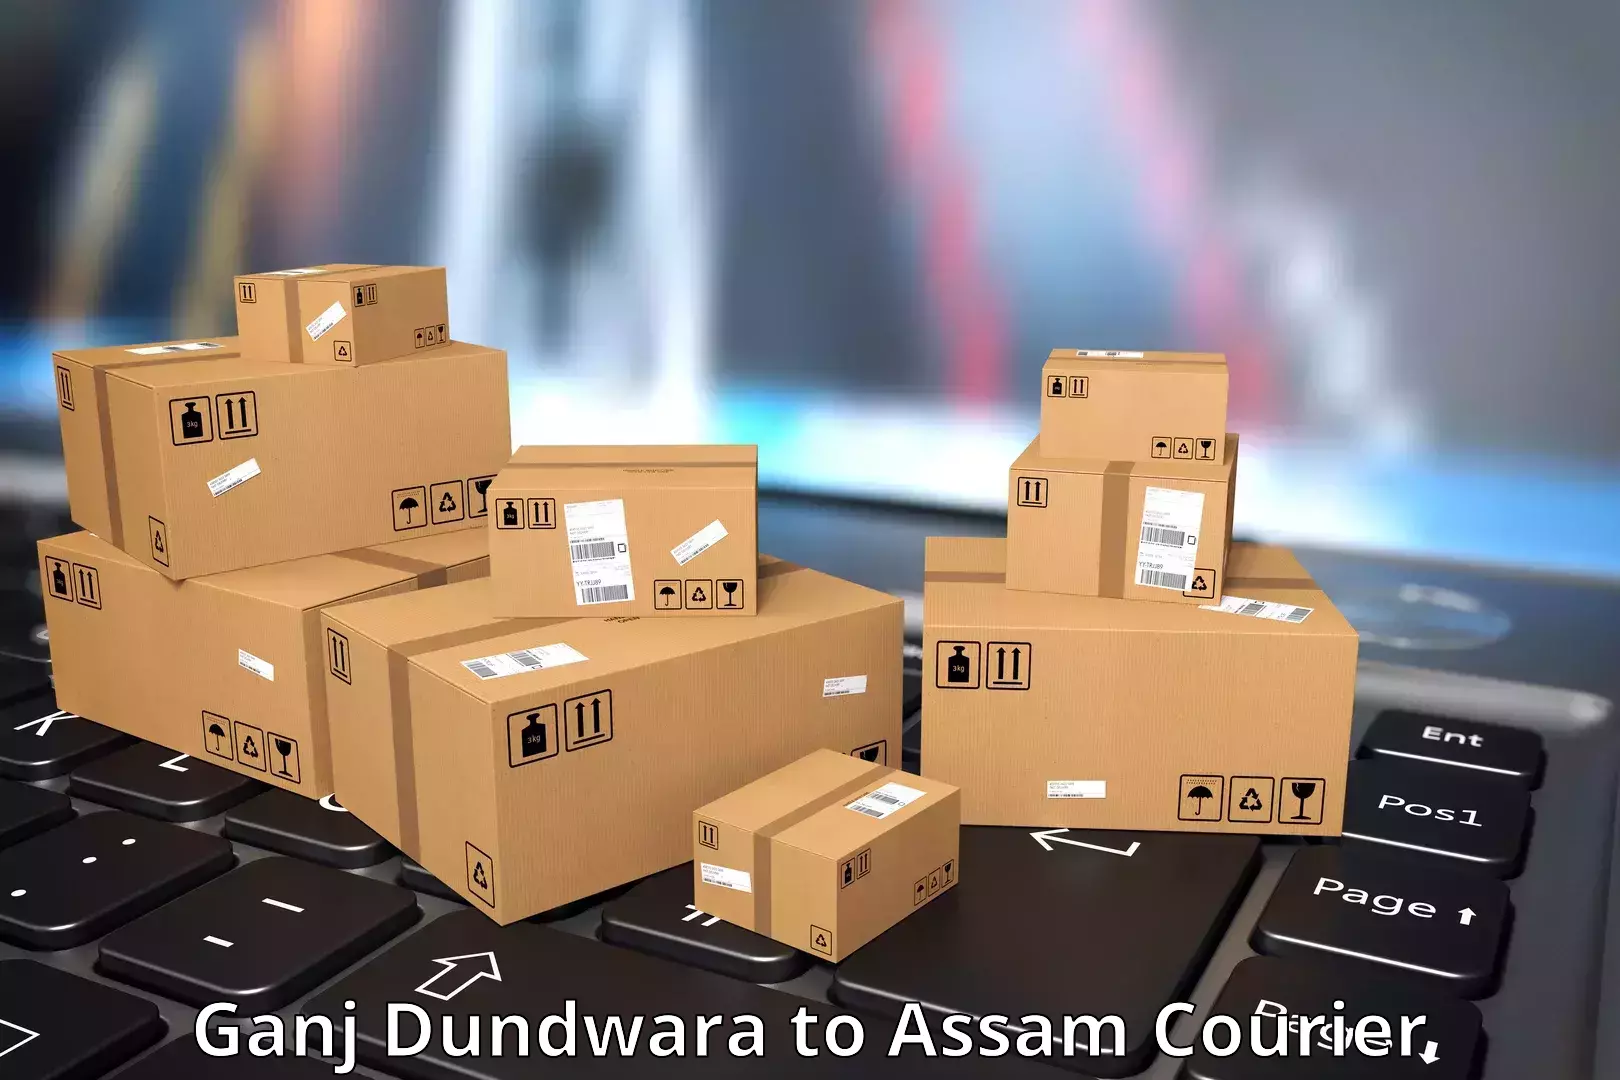 Urgent courier needs Ganj Dundwara to Tinsukia